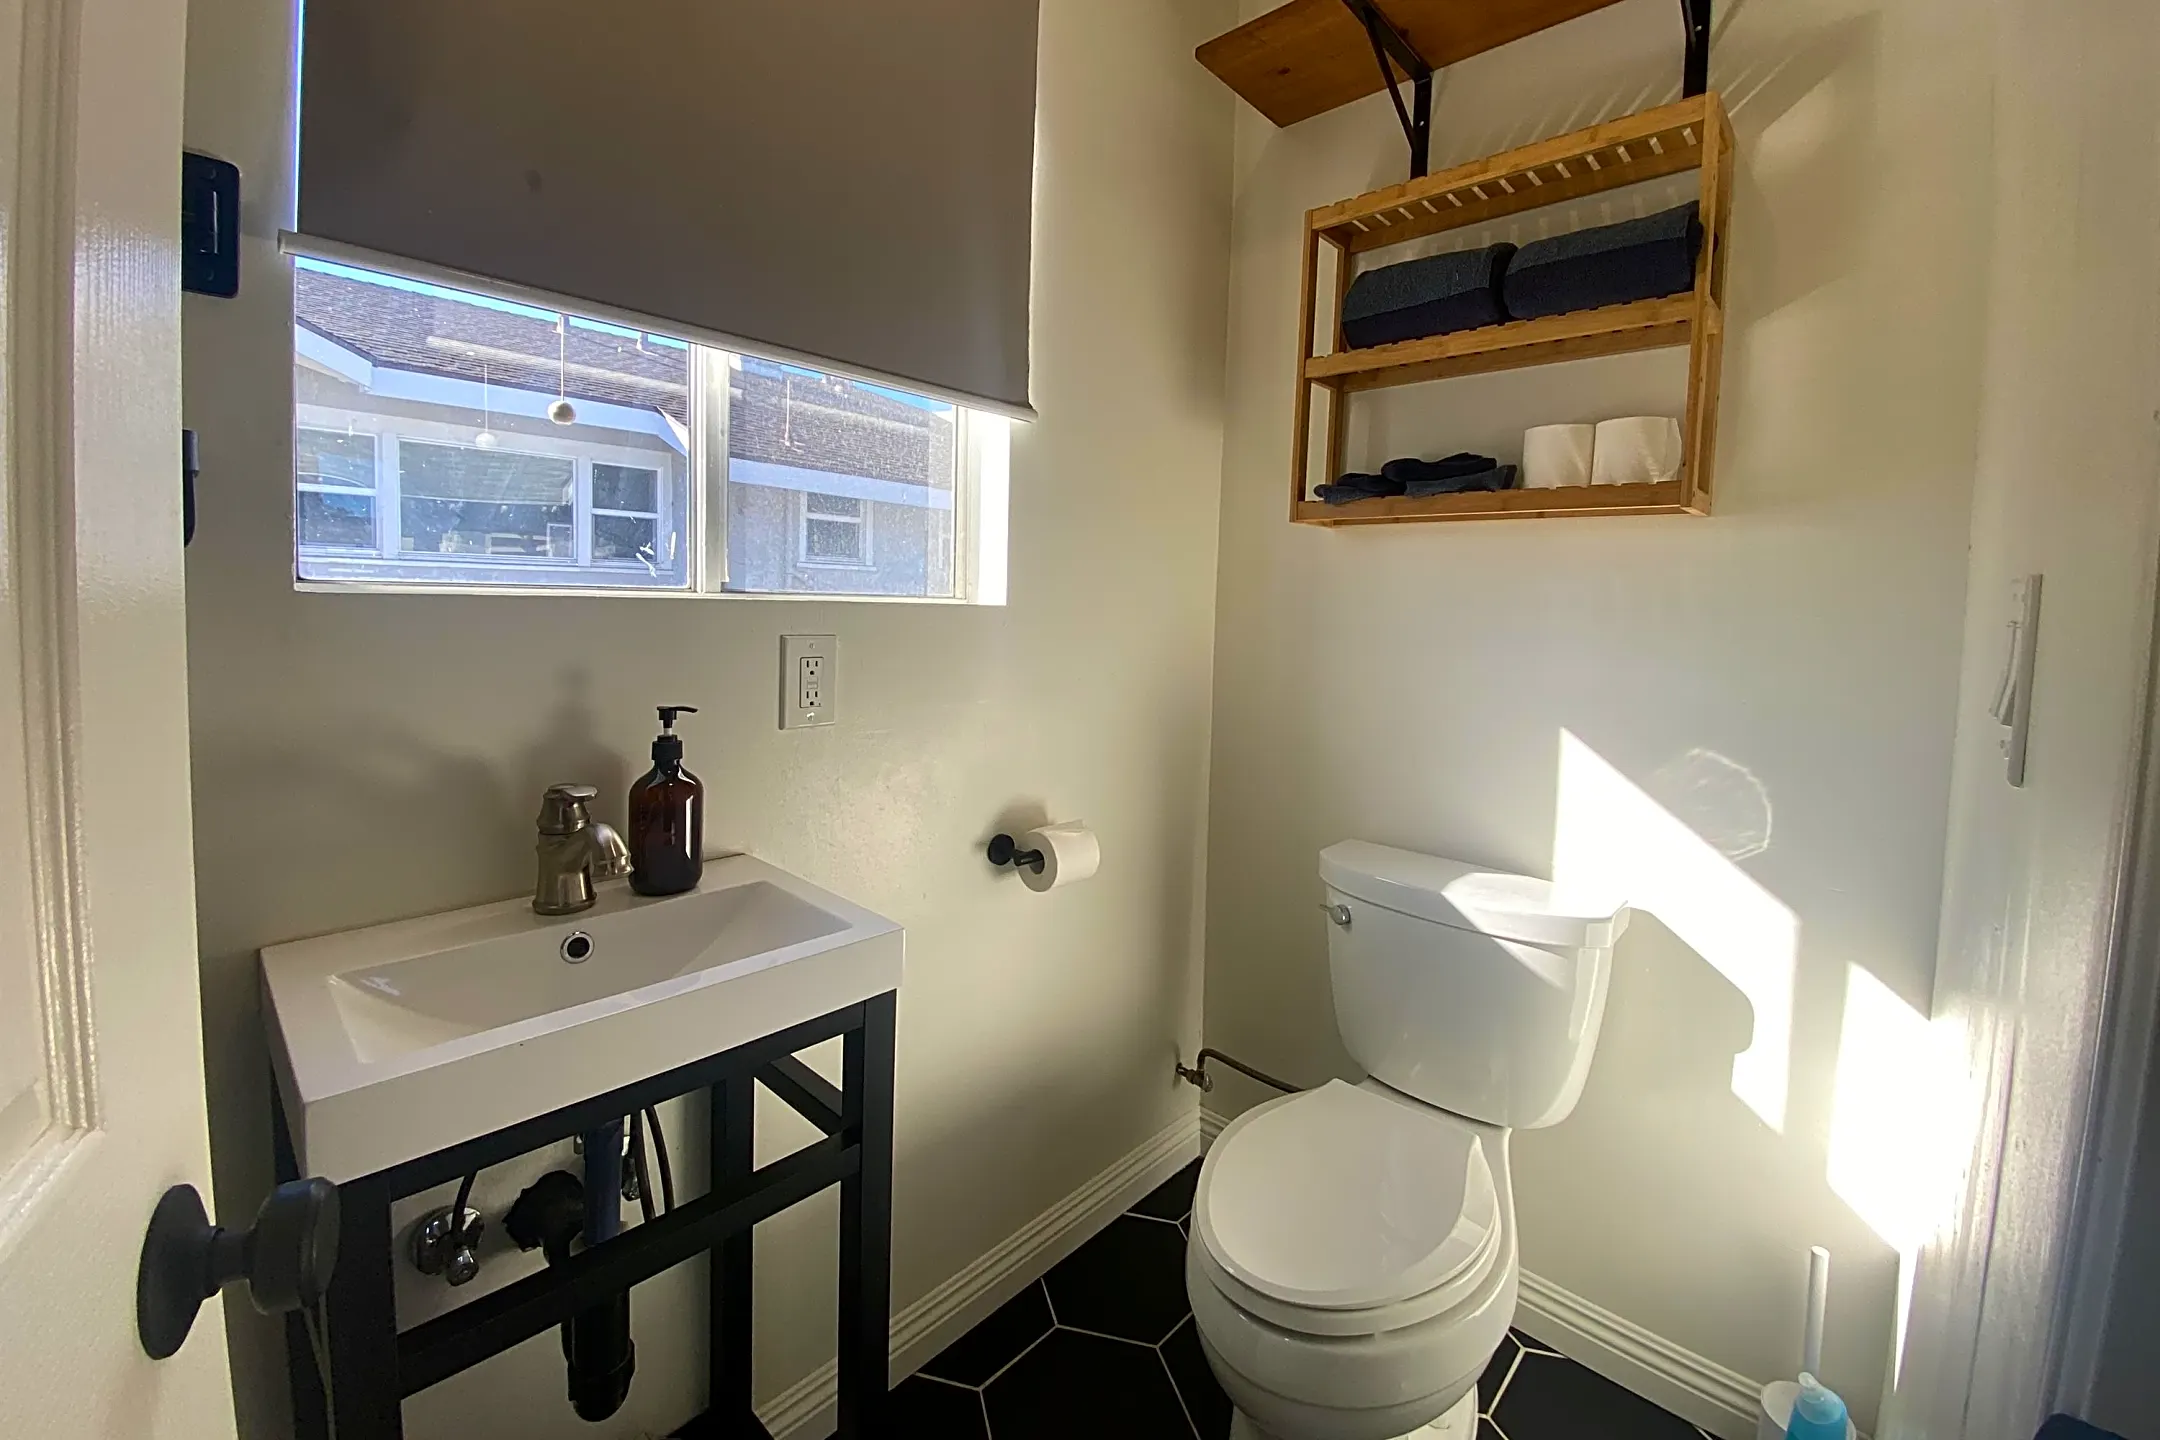 Bathroom - 1030 27th St - San Diego, CA